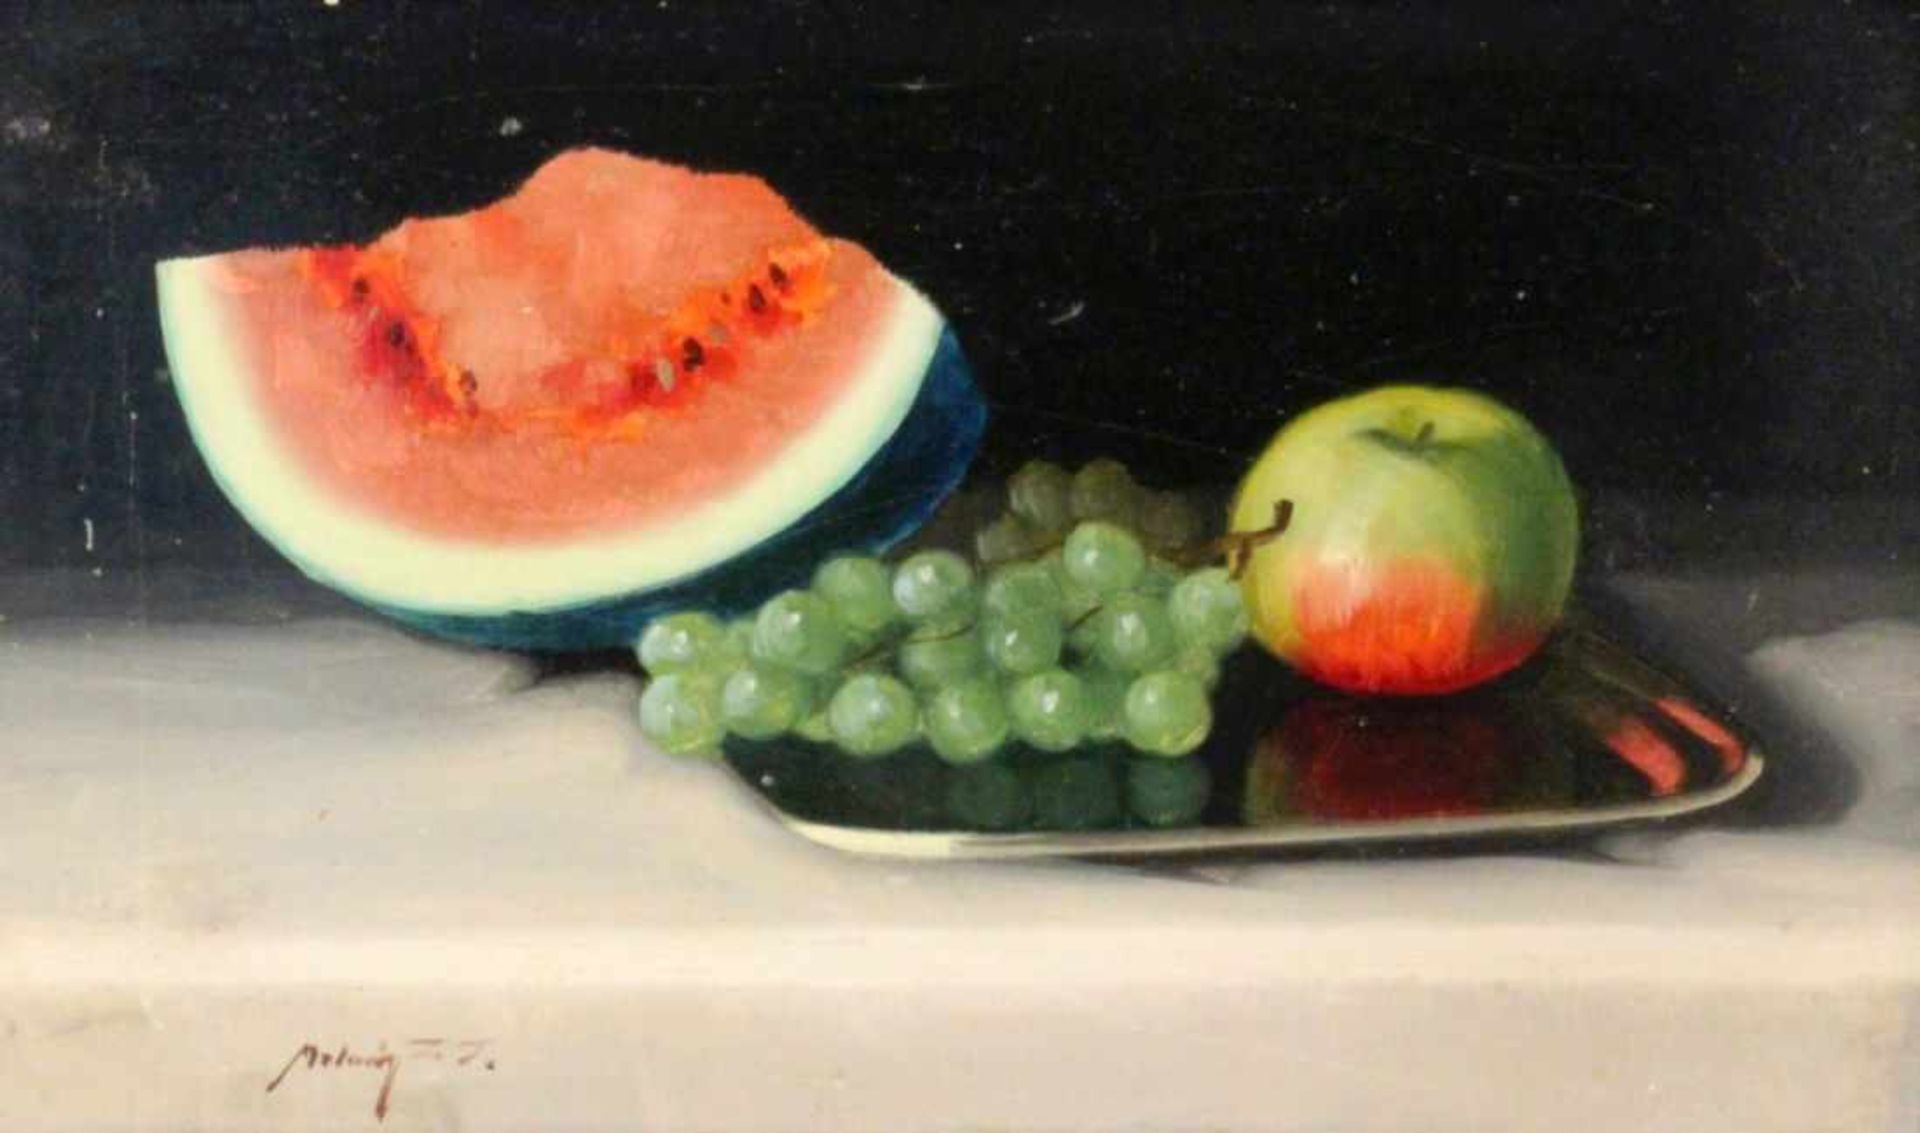 MOLNÁR, JANOS ZOLTANCservenka 1880 - 1960 Gödölloe (Ungarn) Früchtestillleben mit Melone, Trauben - Bild 2 aus 2